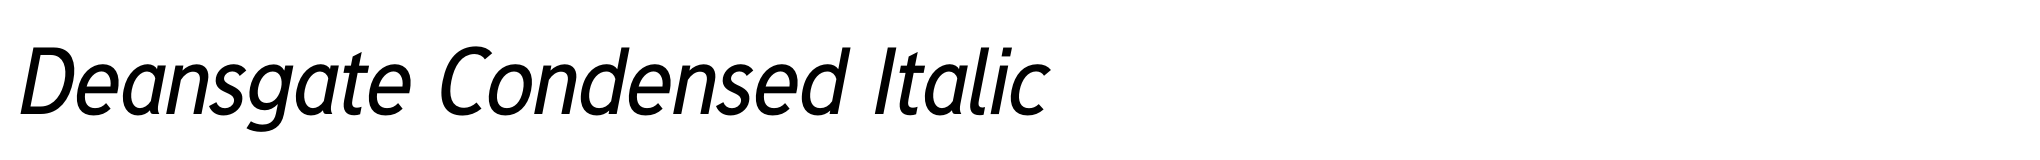 Deansgate Condensed Italic image